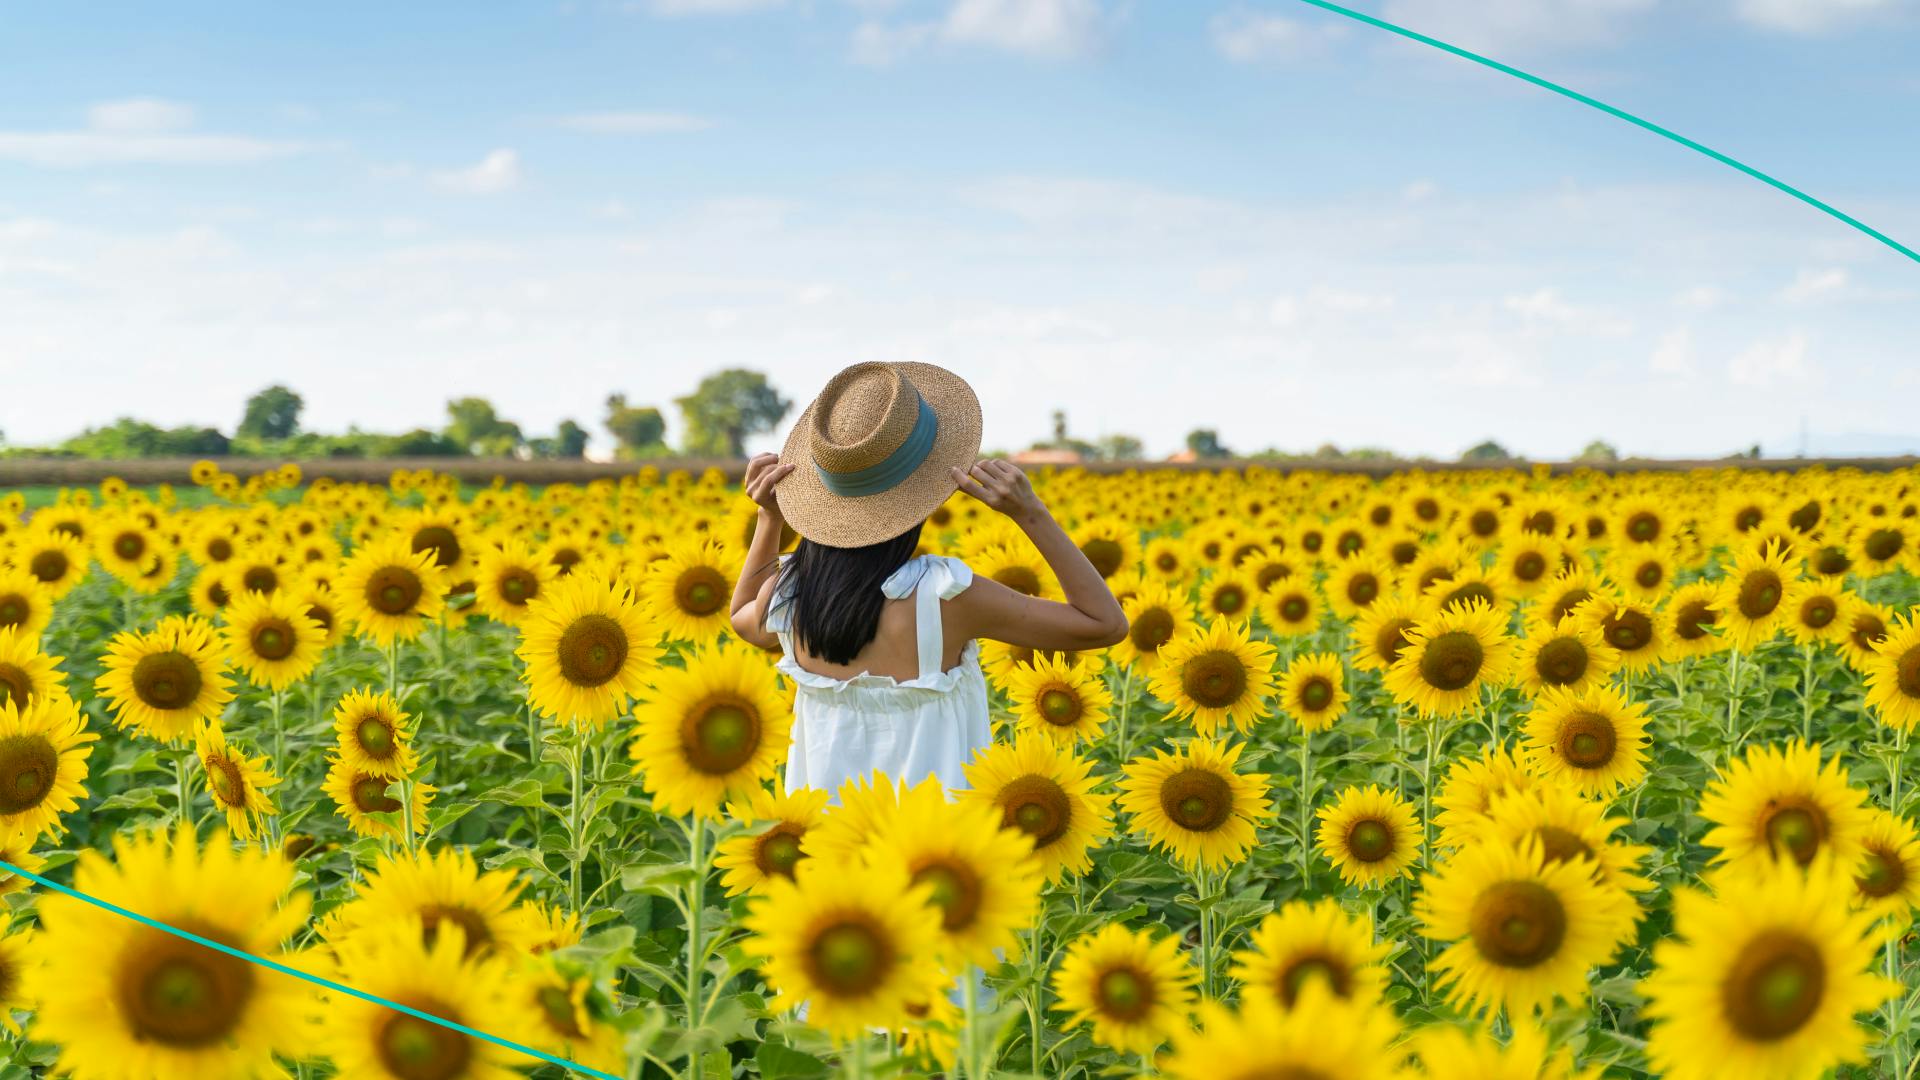 Woman in sunflower field